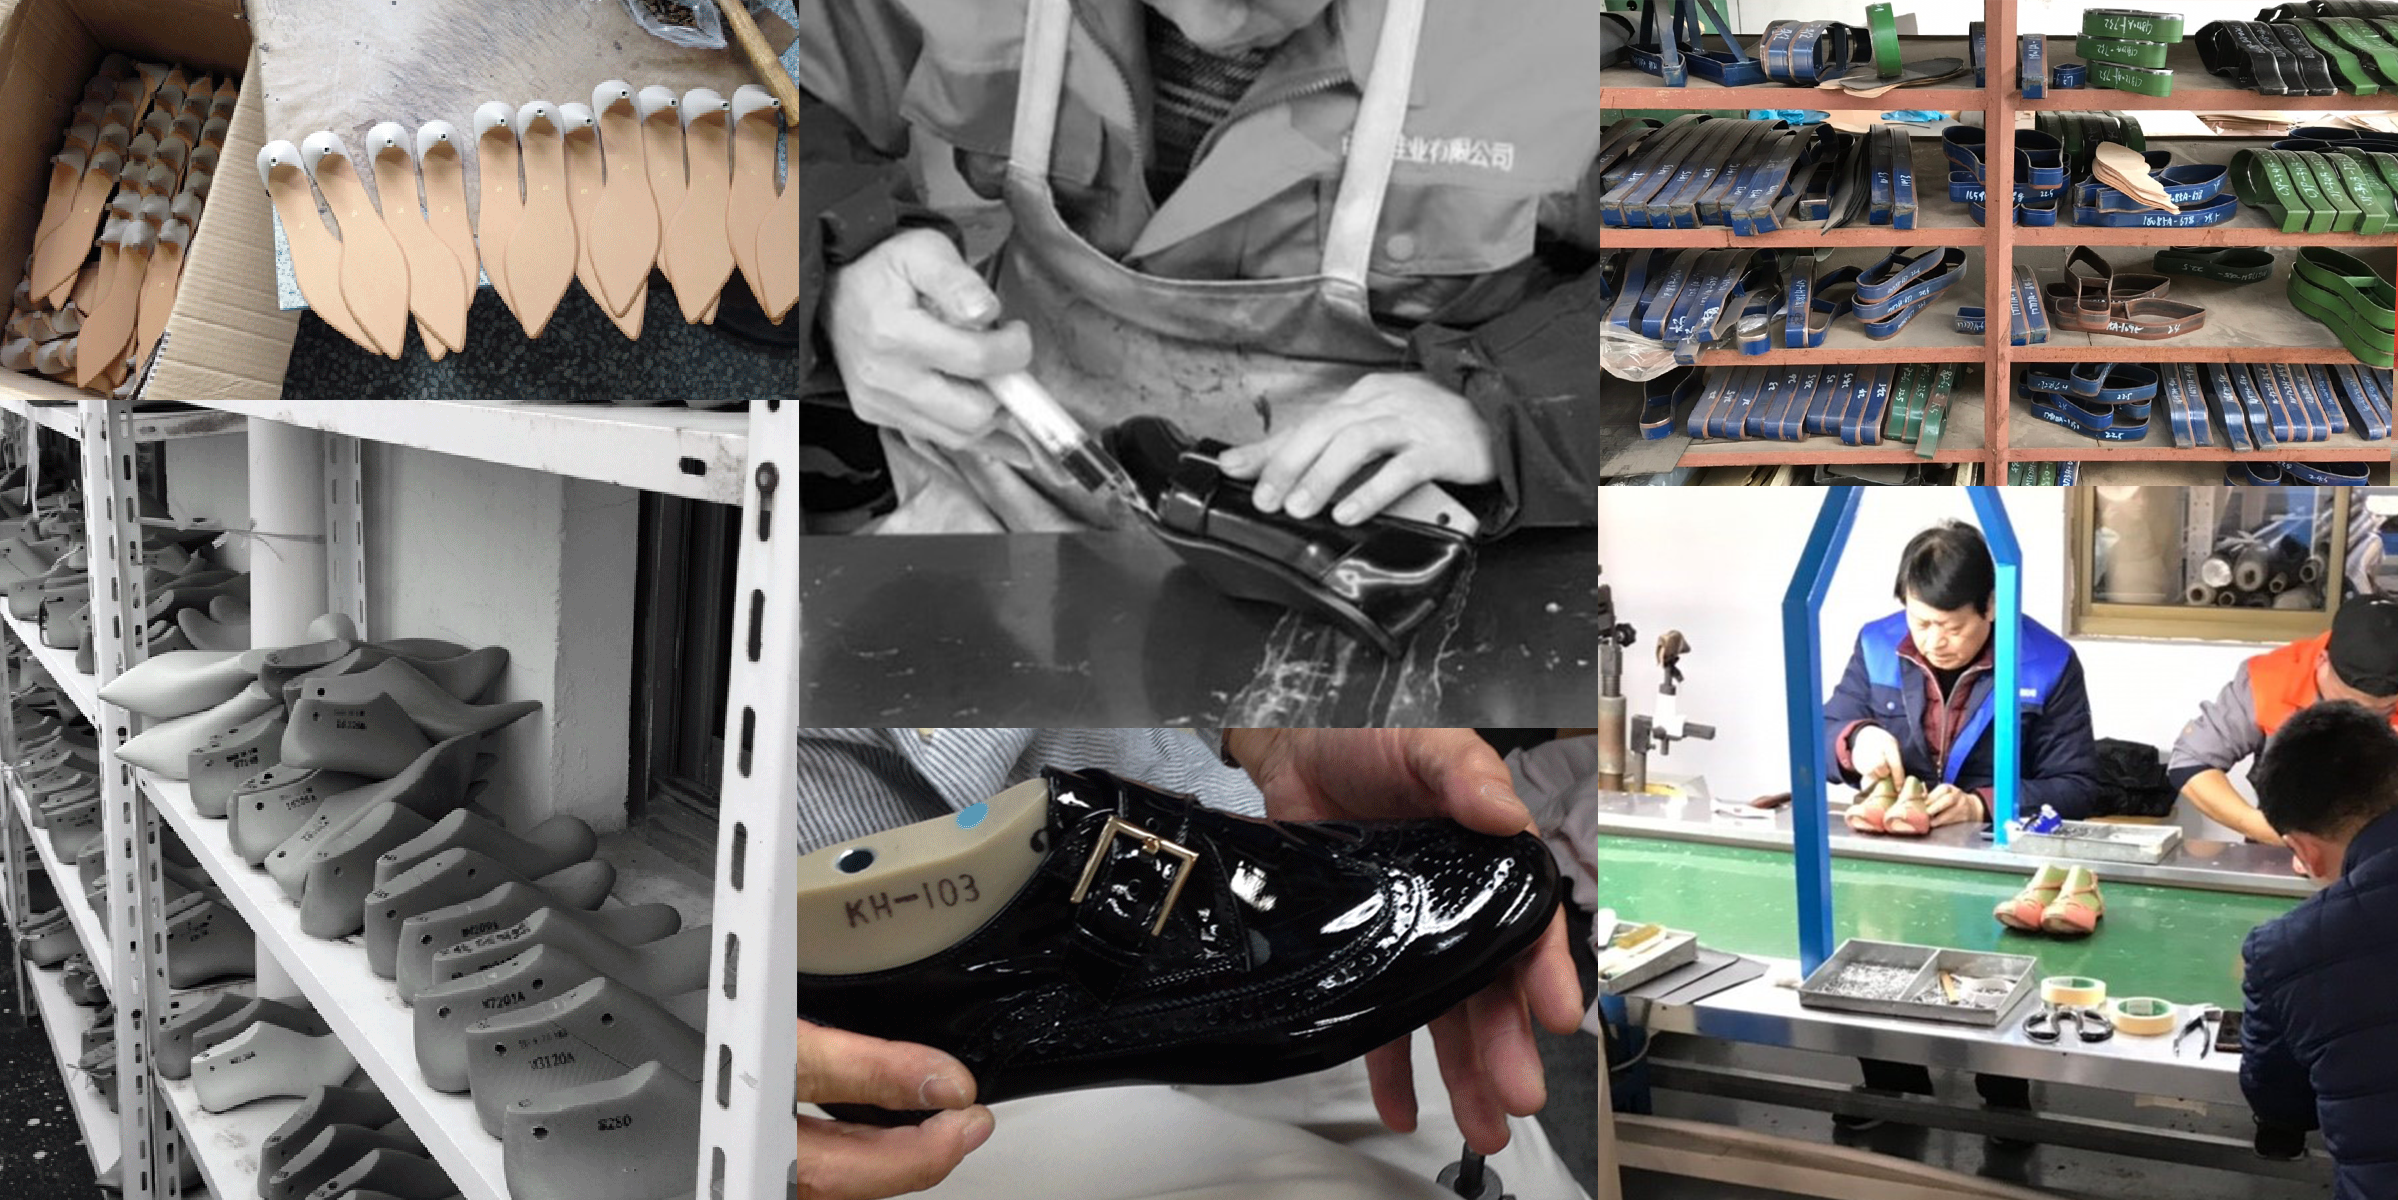 株式会社ハナコ レディースシューズの靴のoem 企画 別注など卸販売商品を展開する会社